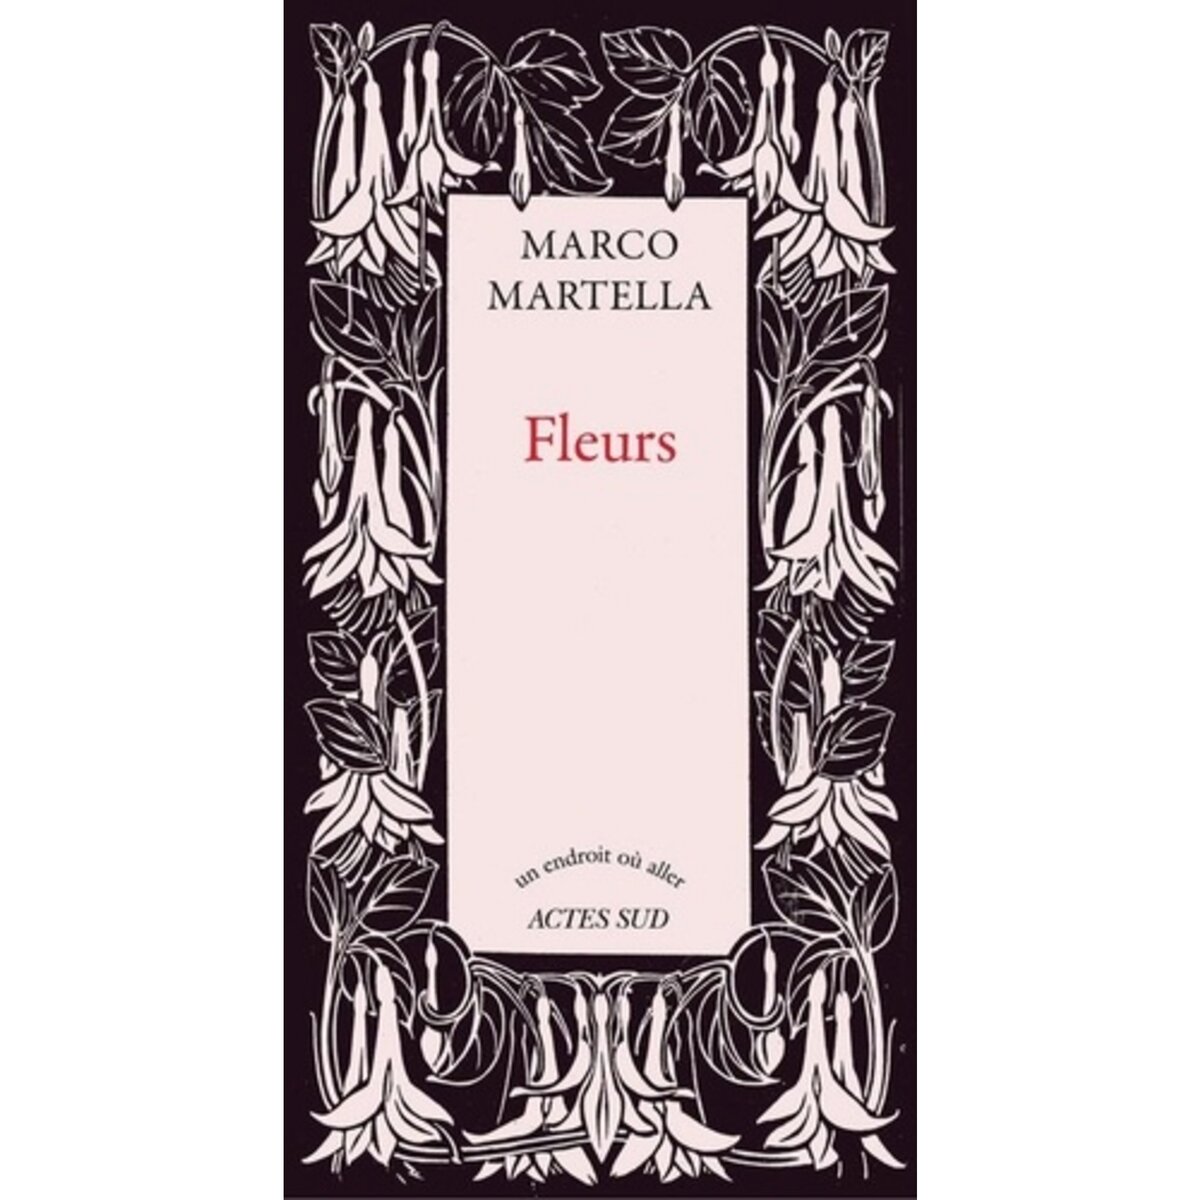  FLEURS, Martella Marco